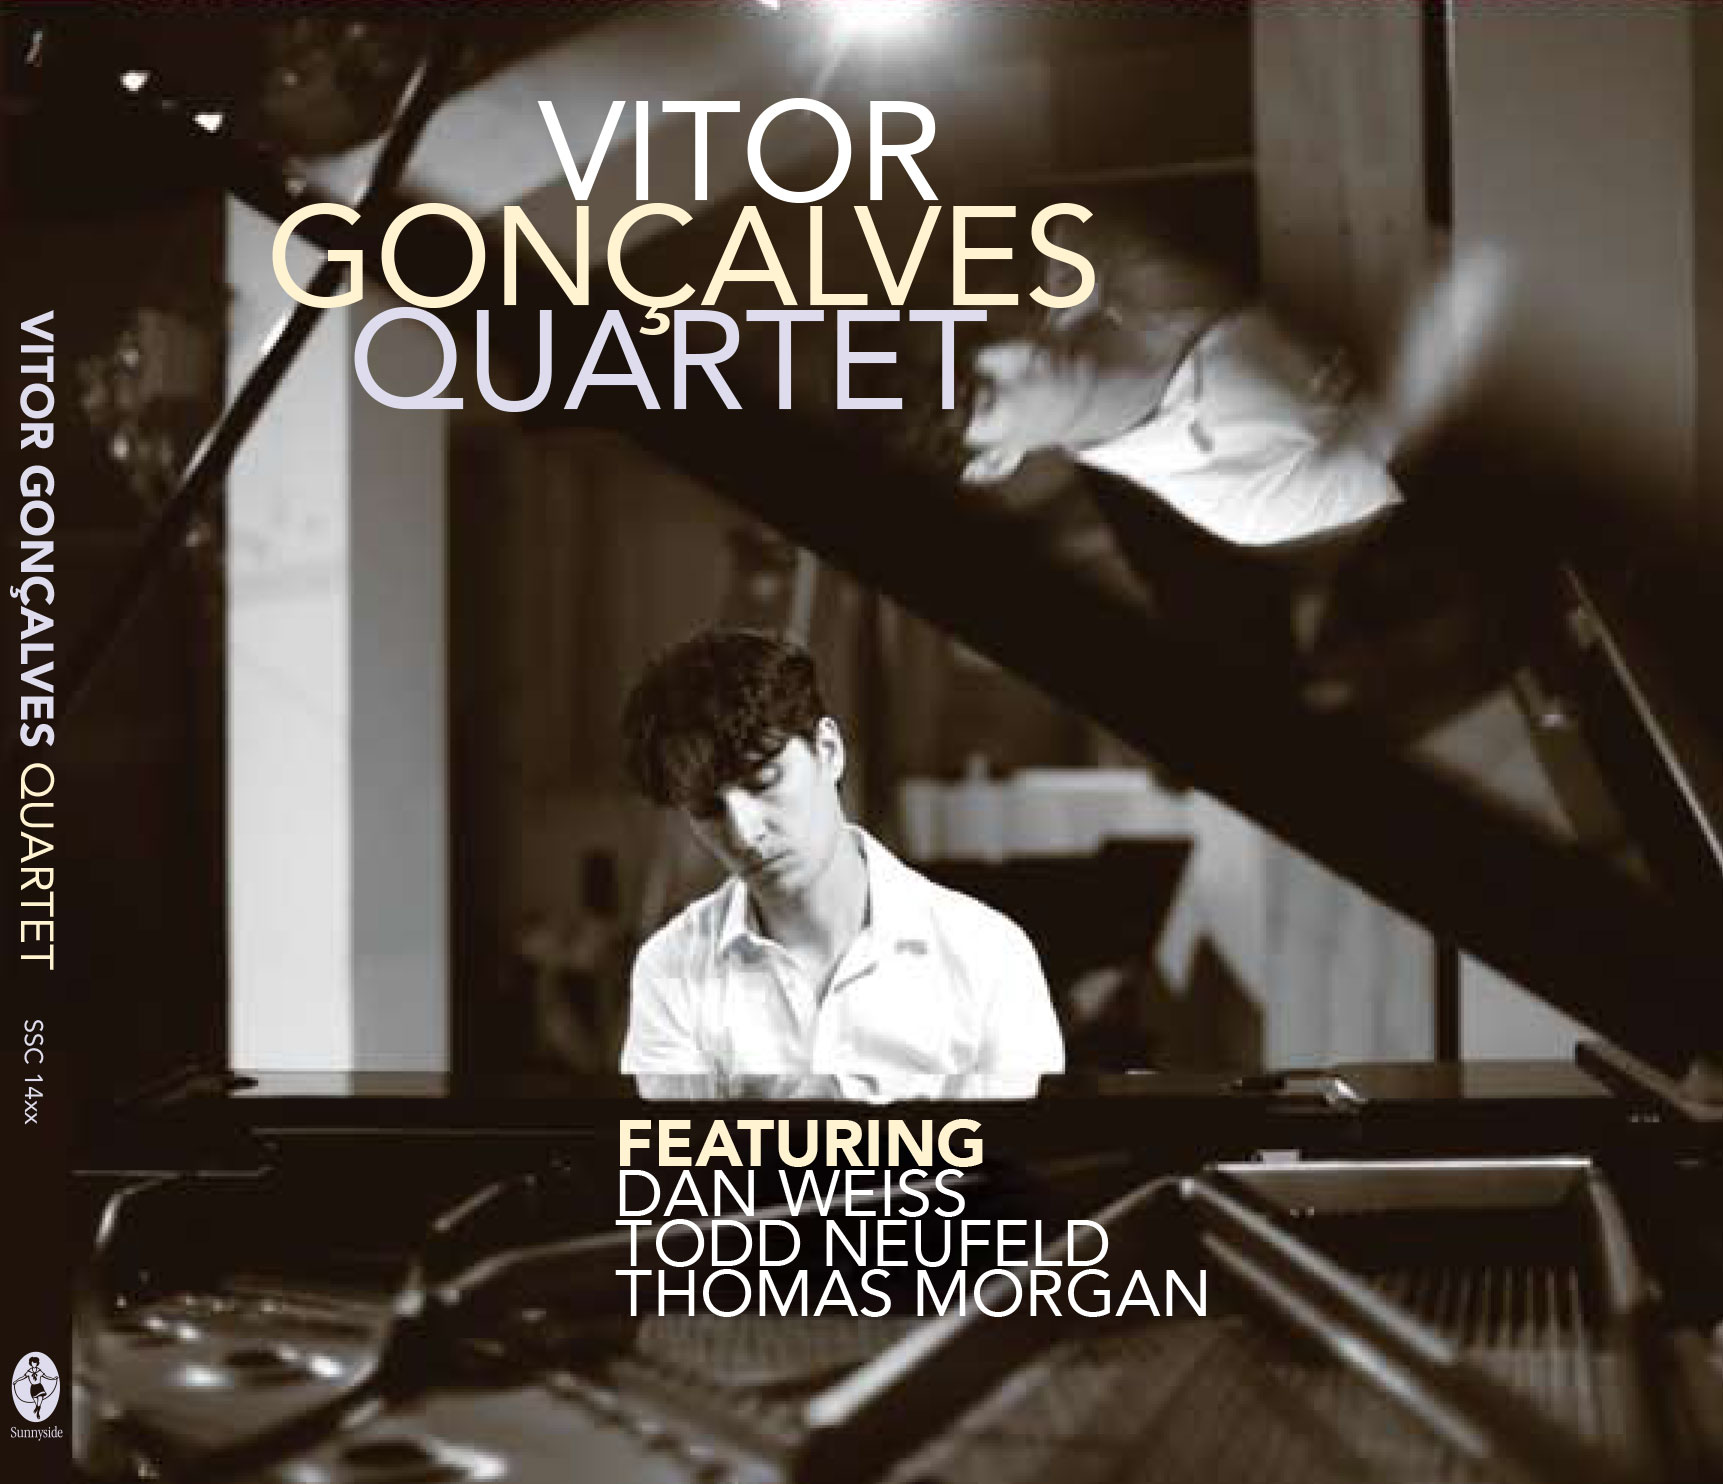 Vitor-Goncalves-Quartet-Album-Cover-2017.jpg